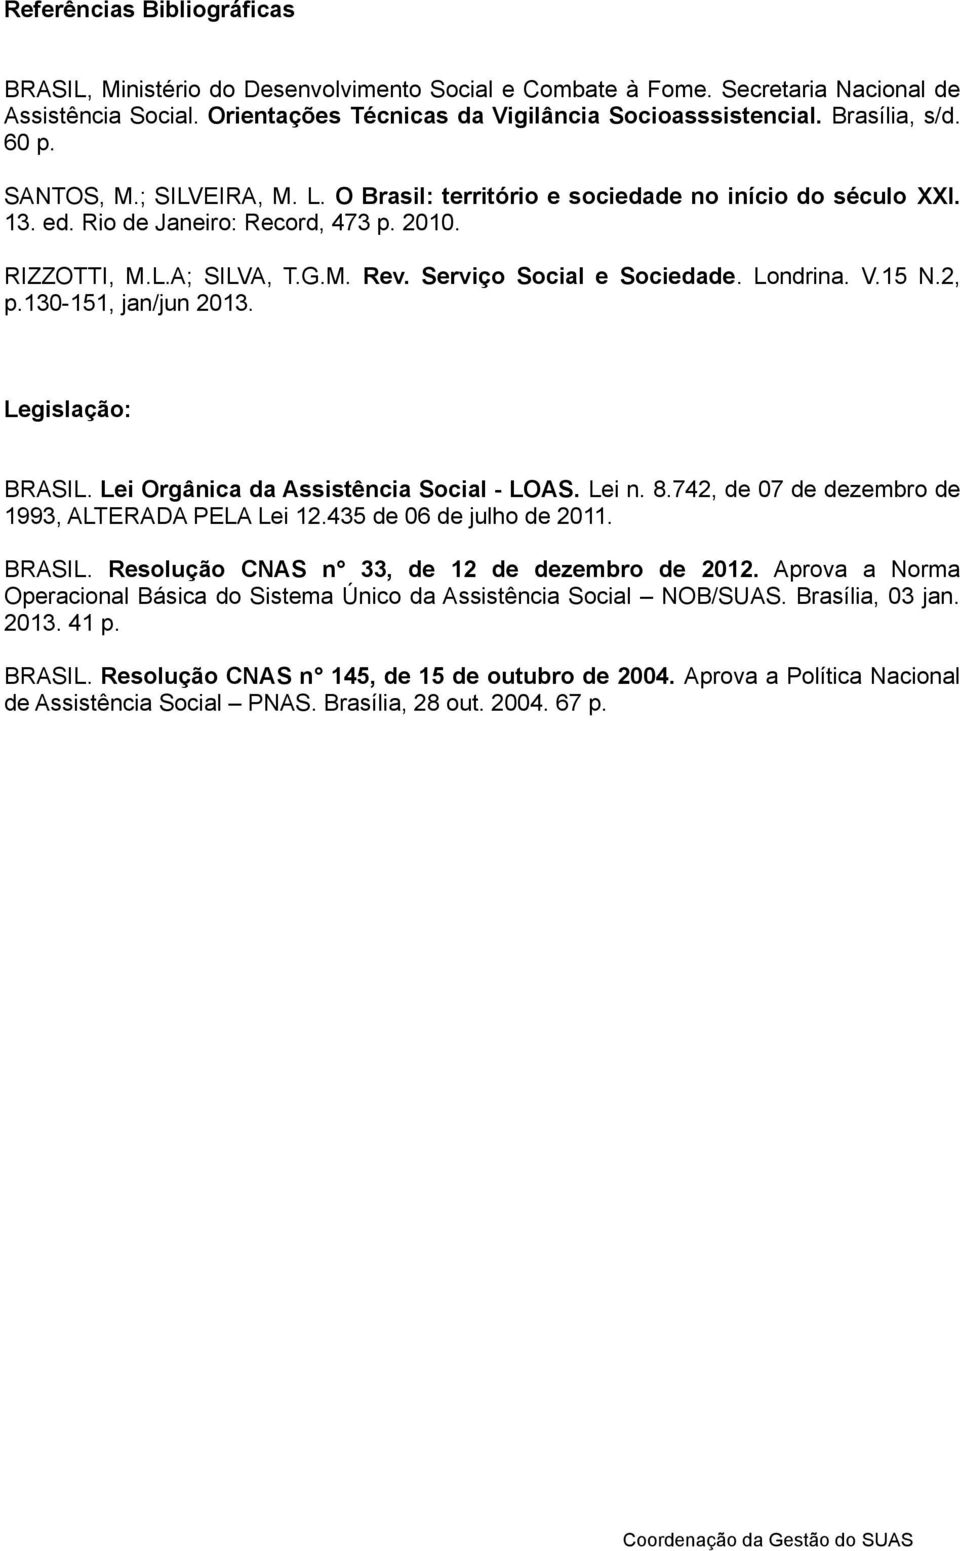 Serviço Social e Sociedade. Londrina. V.15 N.2, p.130-151, jan/jun 2013. Legislação: BRASIL. Lei Orgânica da Assistência Social - LOAS. Lei n. 8.742, de 07 de dezembro de 1993, ALTERADA PELA Lei 12.